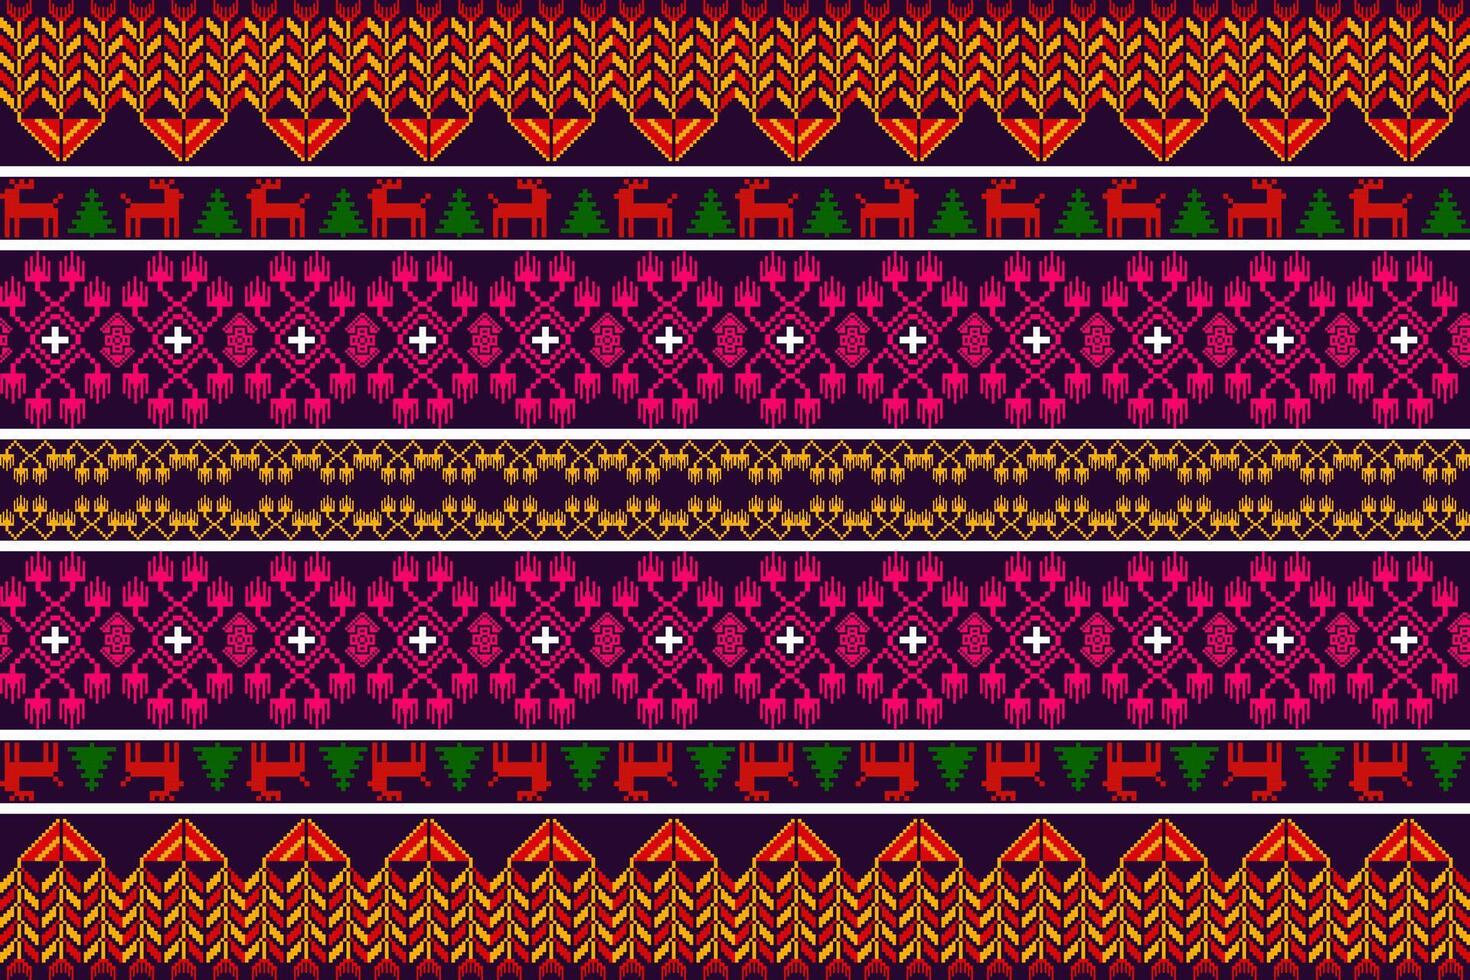 aztec tribal meetkundig vector achtergrond in zwart rood geel wit naadloos streep patroon. traditioneel ornament etnisch stijl. ontwerp voor textiel, kleding stof, kleding, gordijn, tapijt, ornament, inpakken.